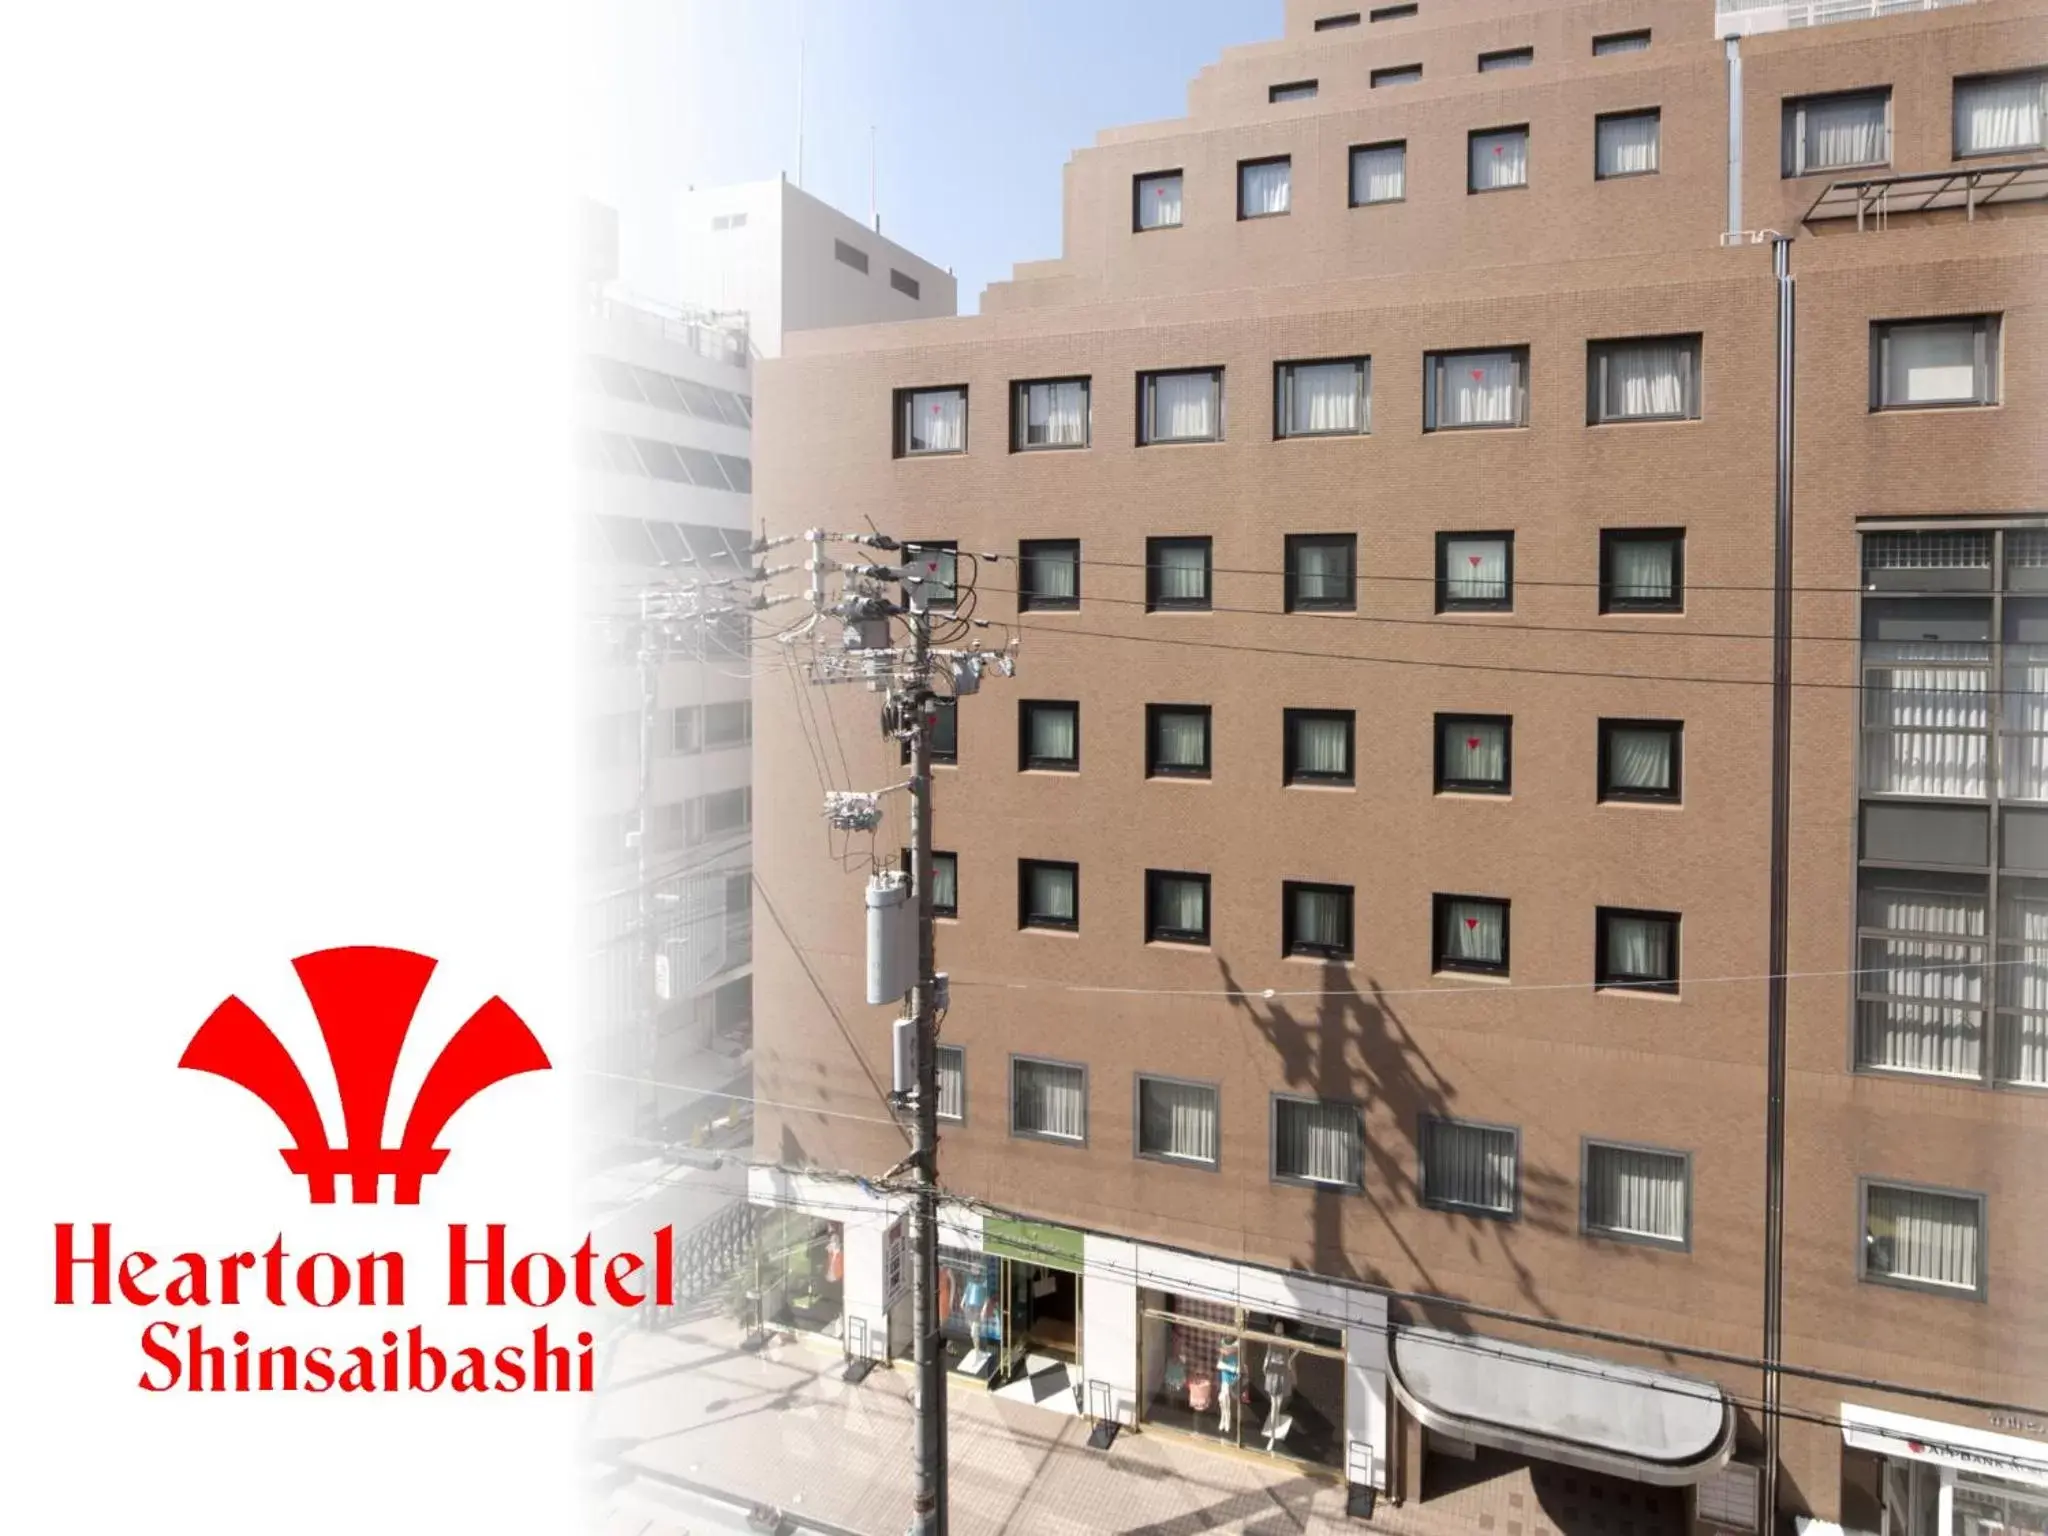 Facade/entrance, Property Building in Hearton Hotel Shinsaibashi